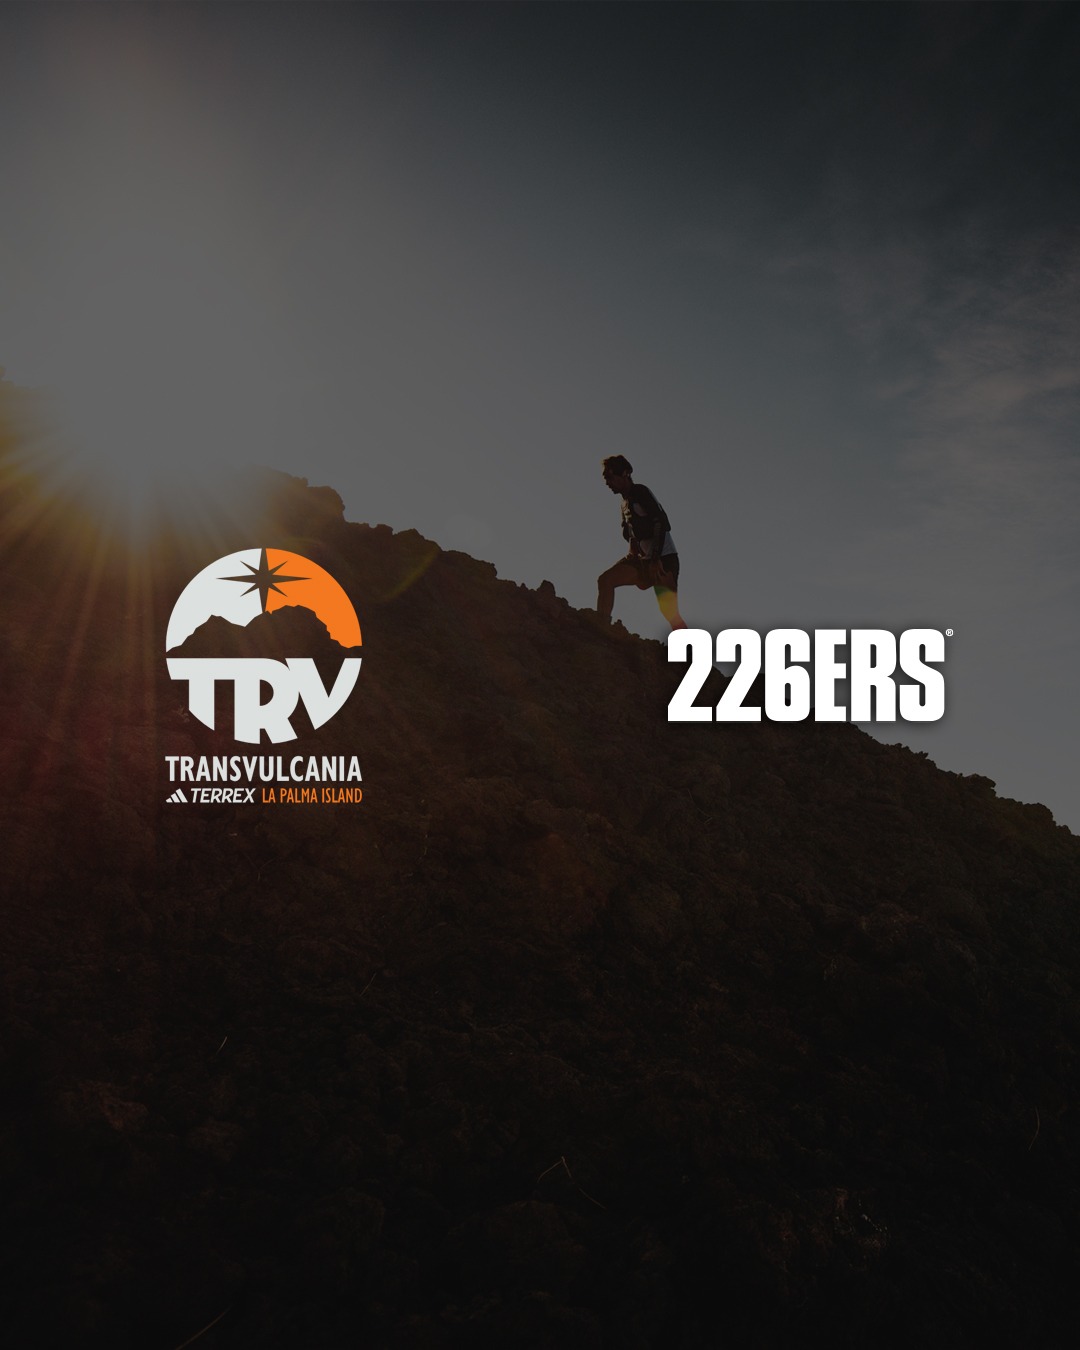 La Transvulcania adidas TERREX se suplementará con 226ERS